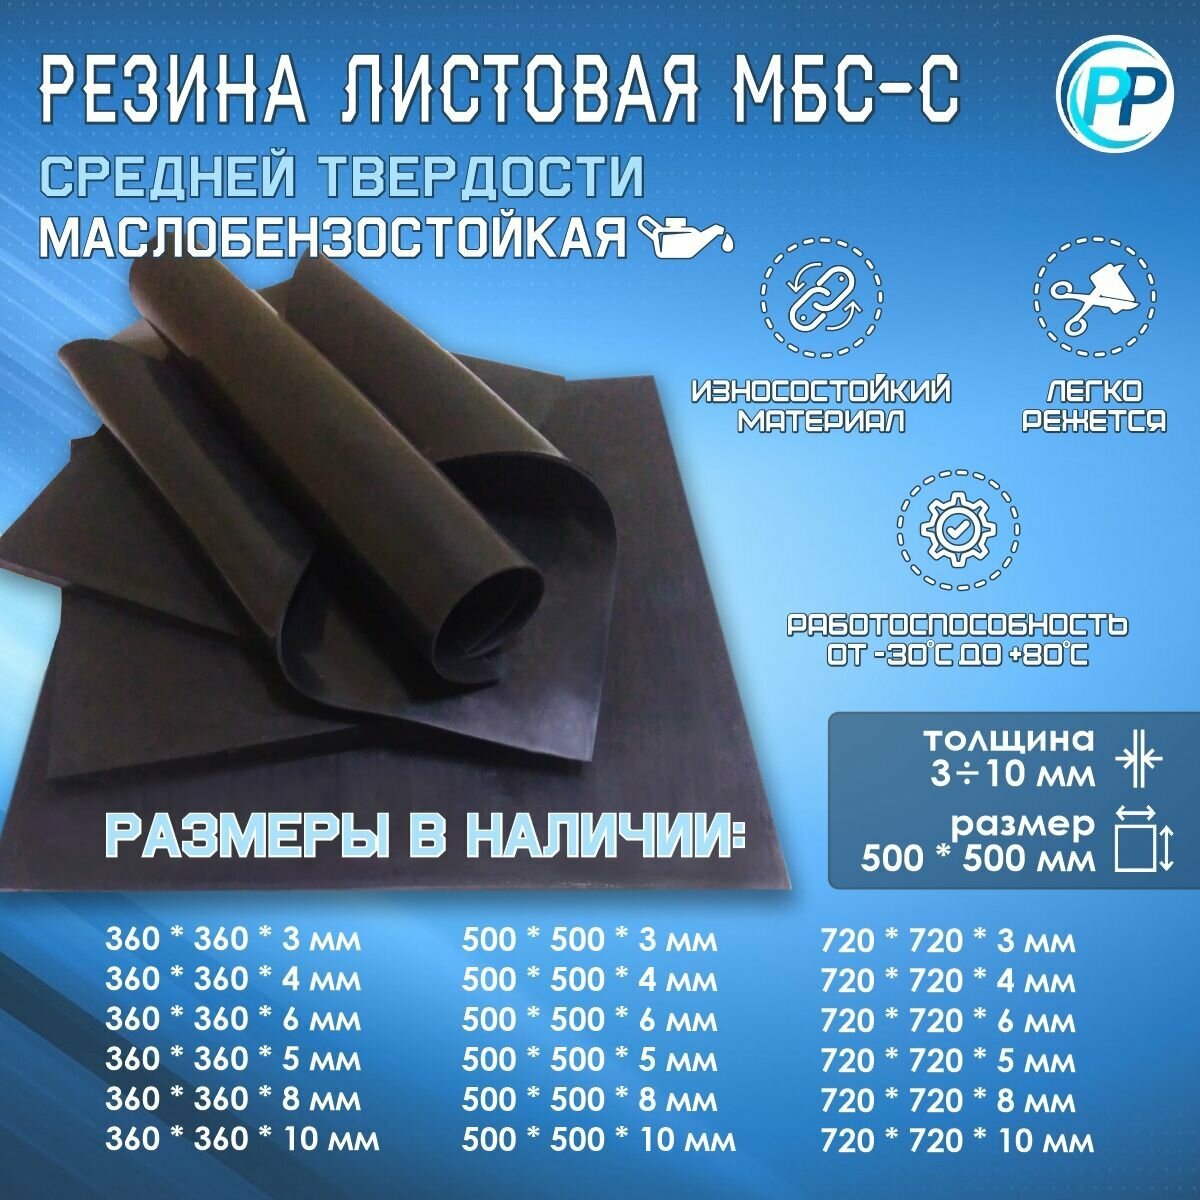 Резина листовая 2-ф 1 МБС (Маслобензостоикая) 5 мм 500х500 мм